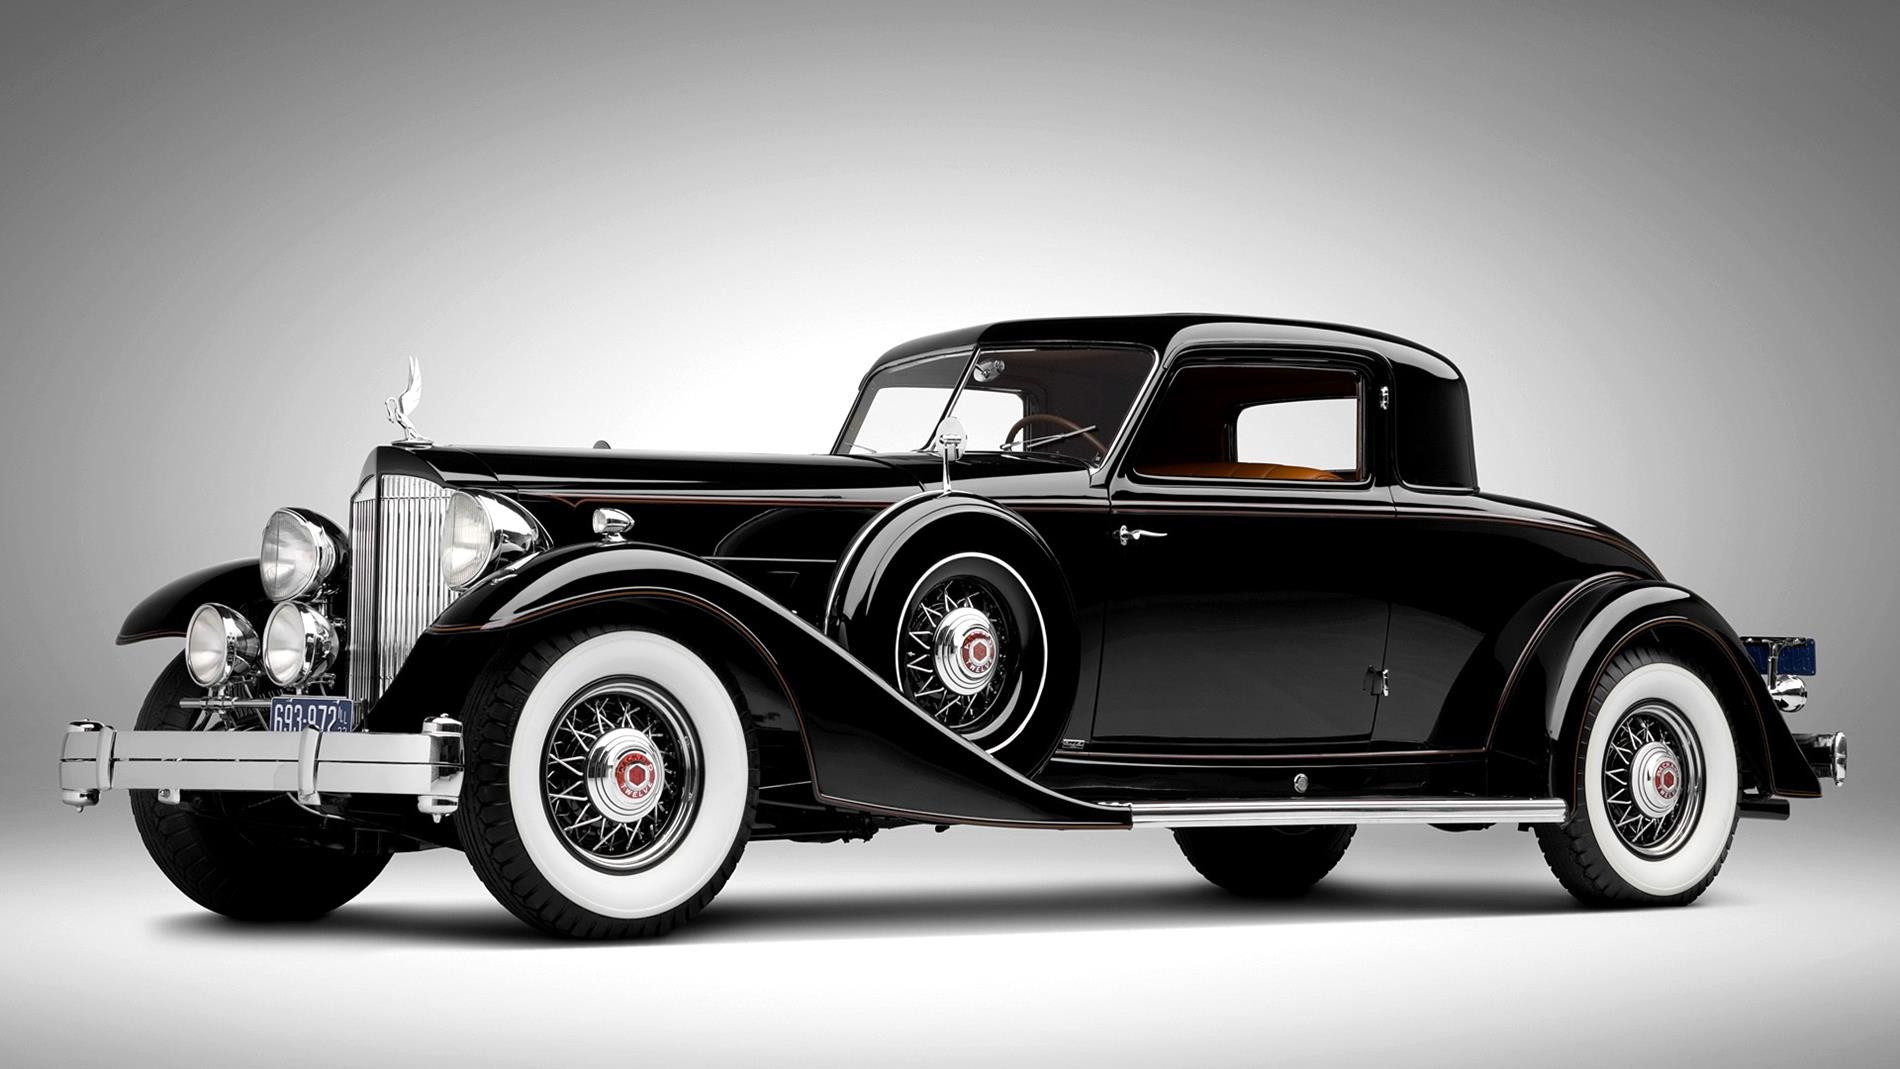 The-Best-Vintage-Car-Wallpapers-21-Best Vintage Car-wv-aston martin ...